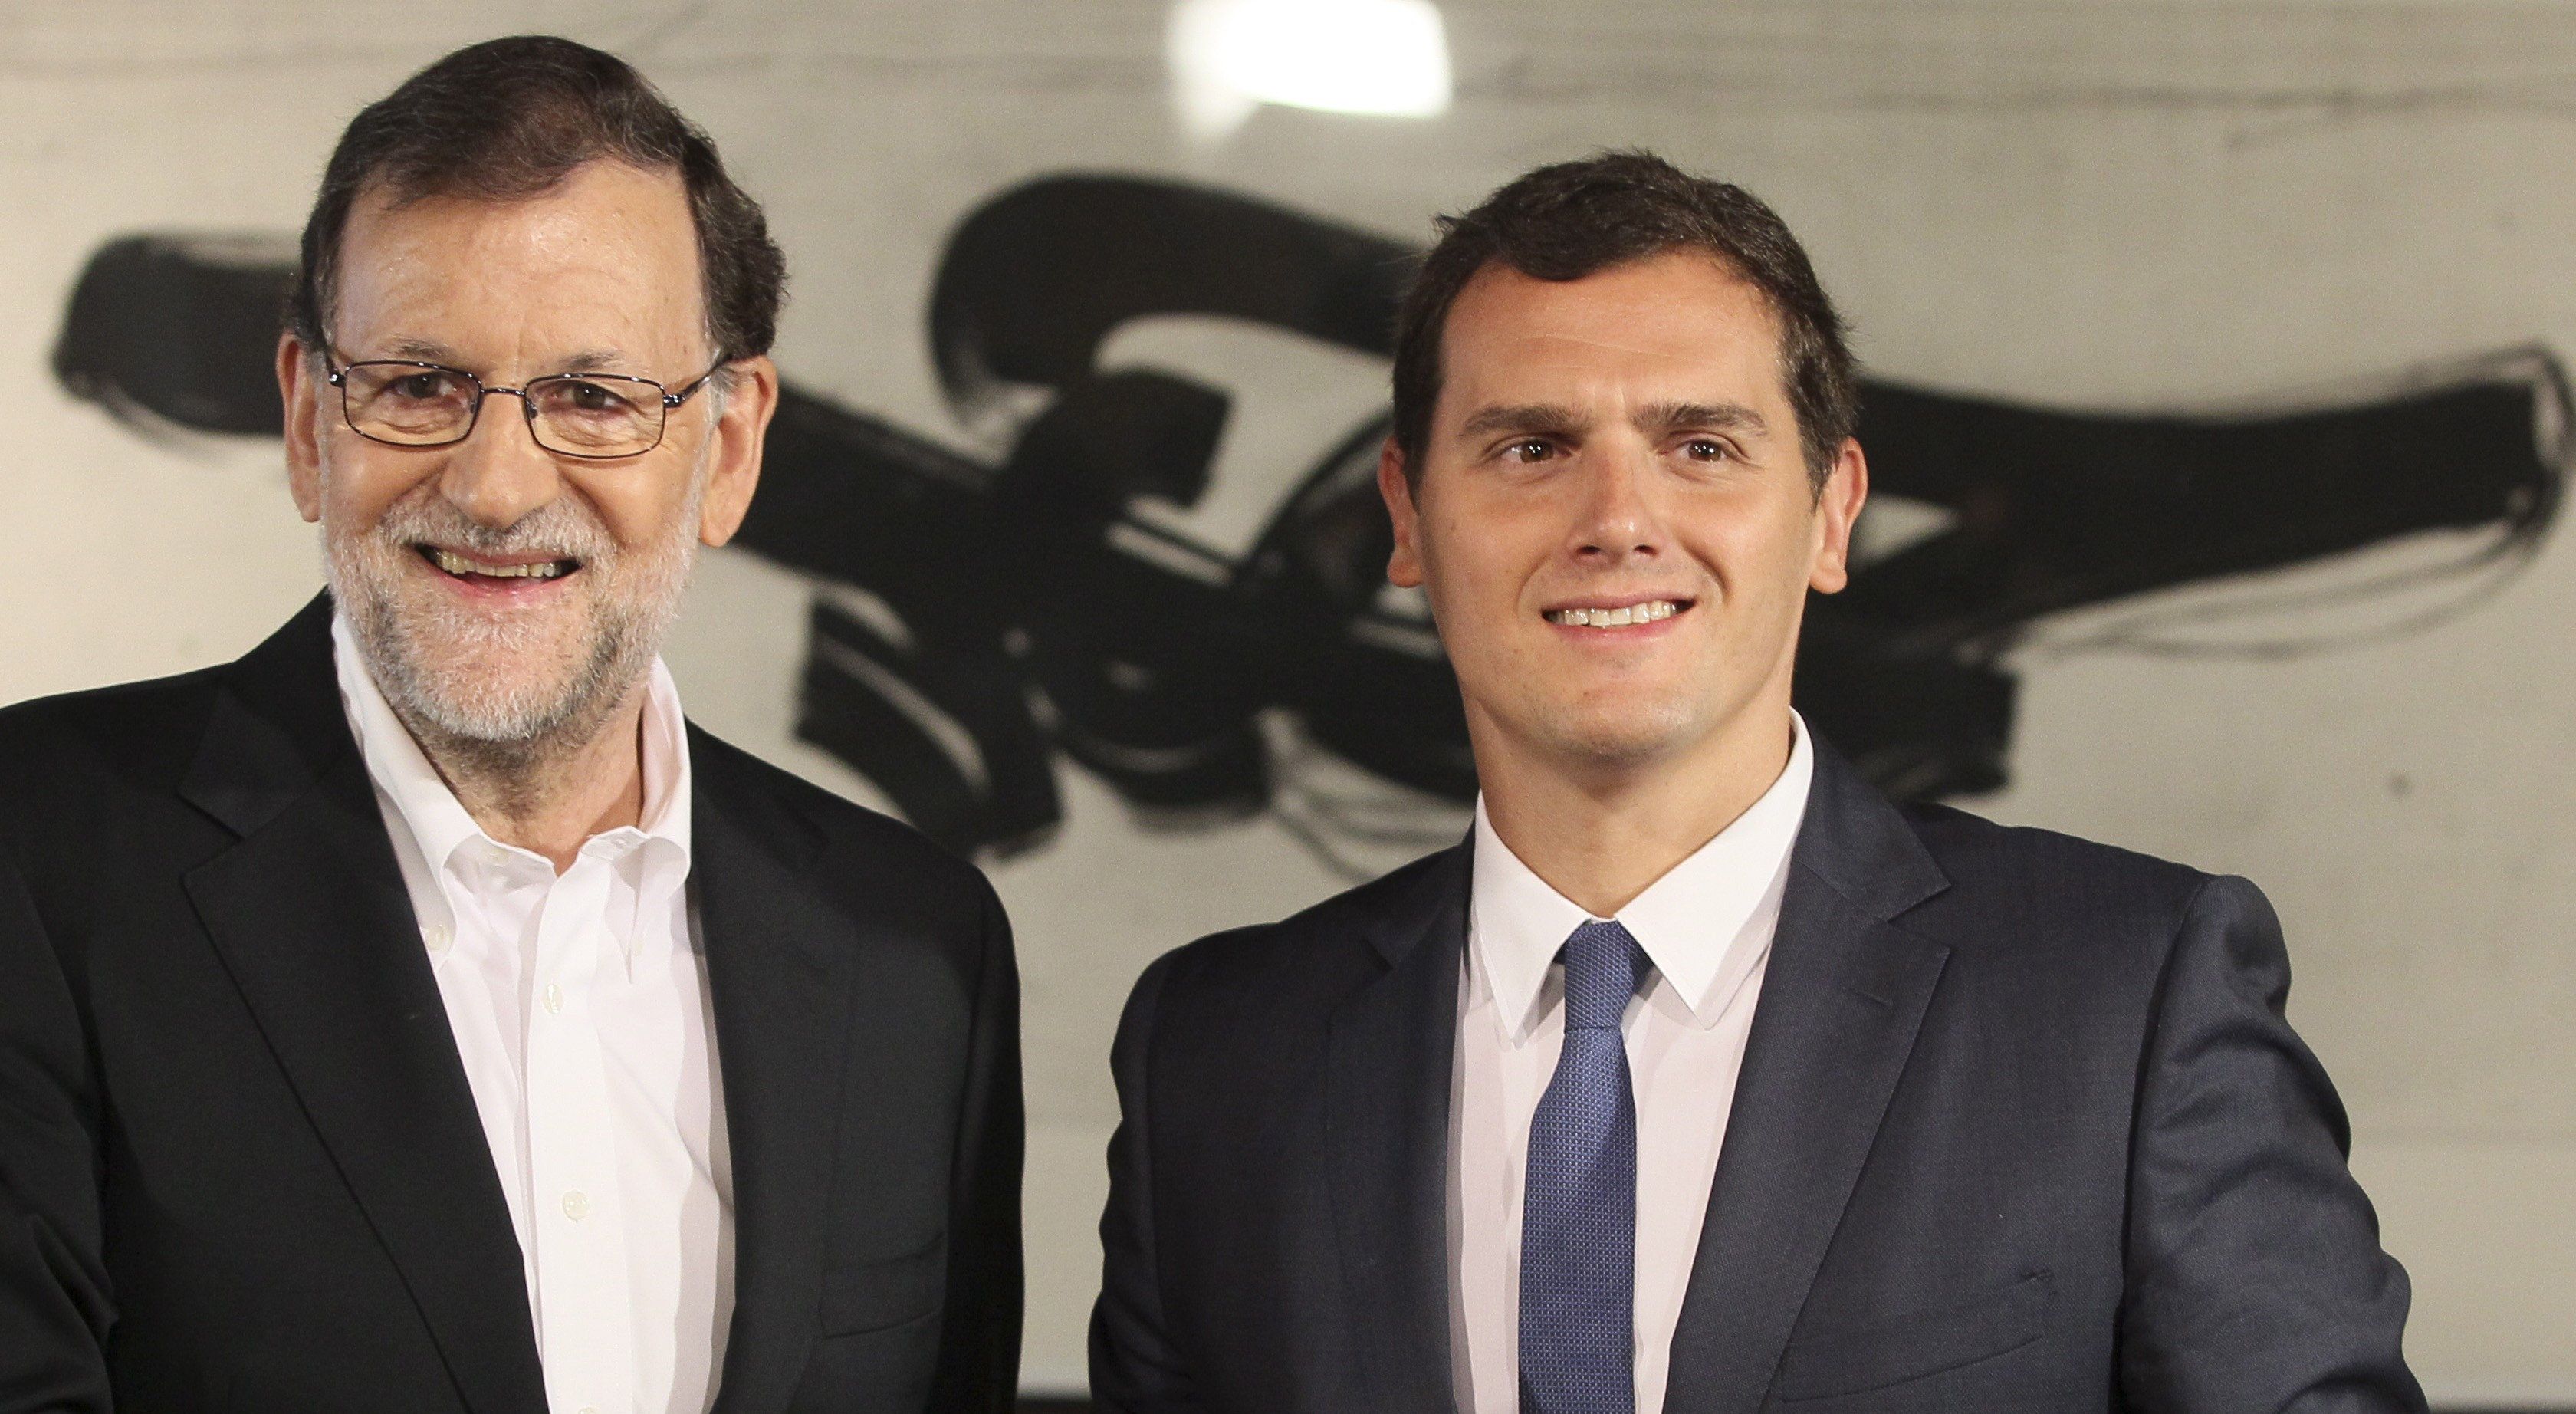 Bloomberg advierte: "El caso catalán vuelve a amenazar los presupuestos de Rajoy"